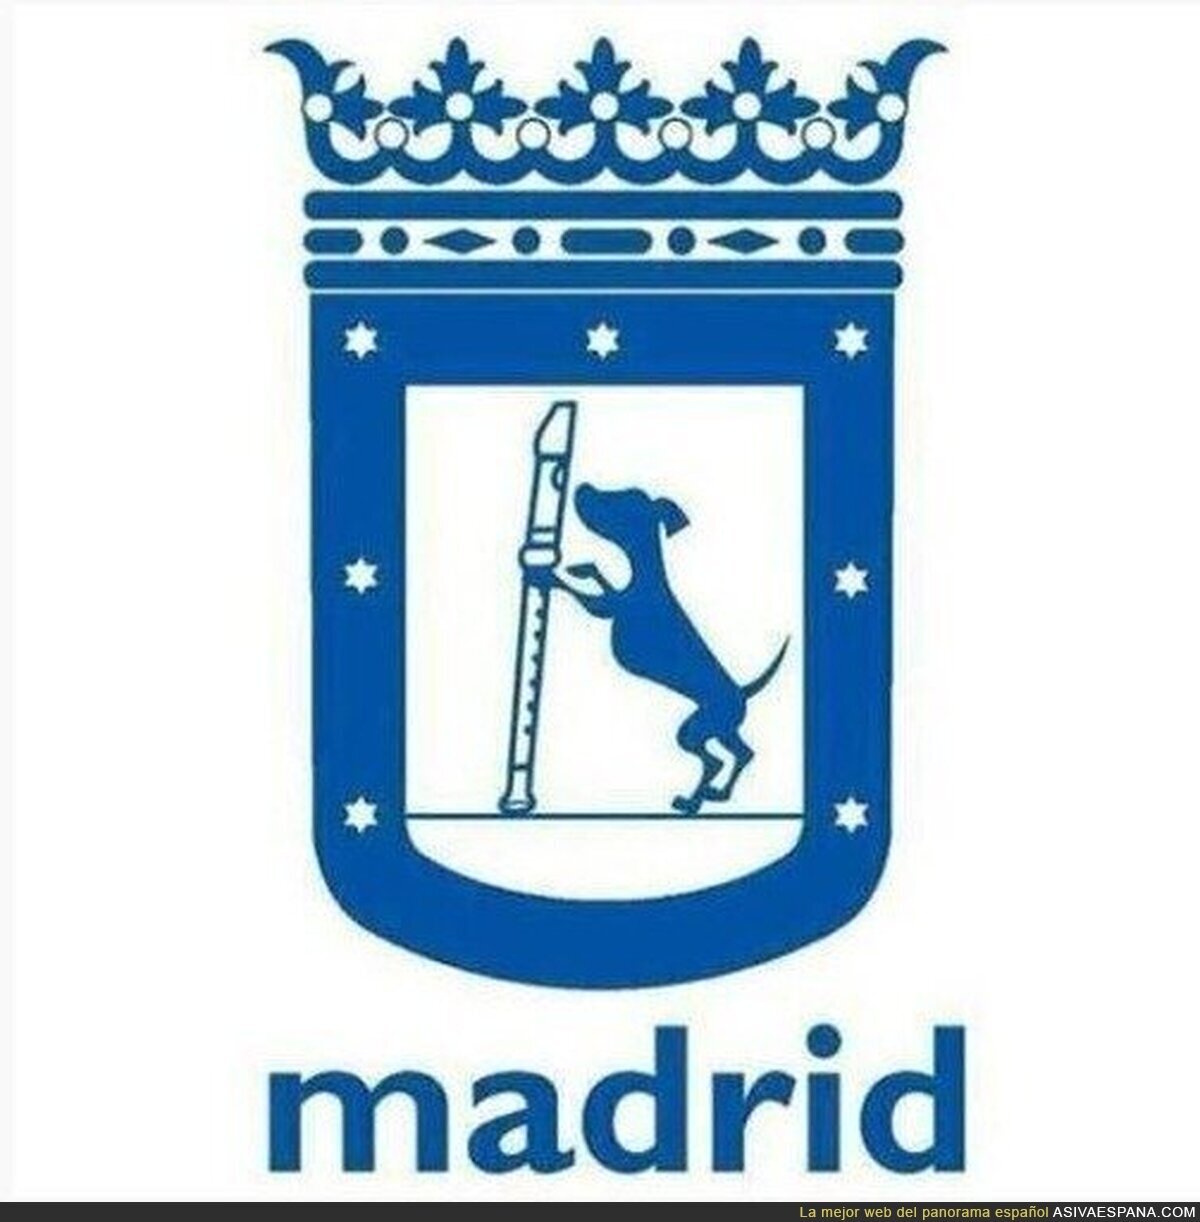 El nuevo escudo de Madrid tras el cambio en el Ayuntamiento